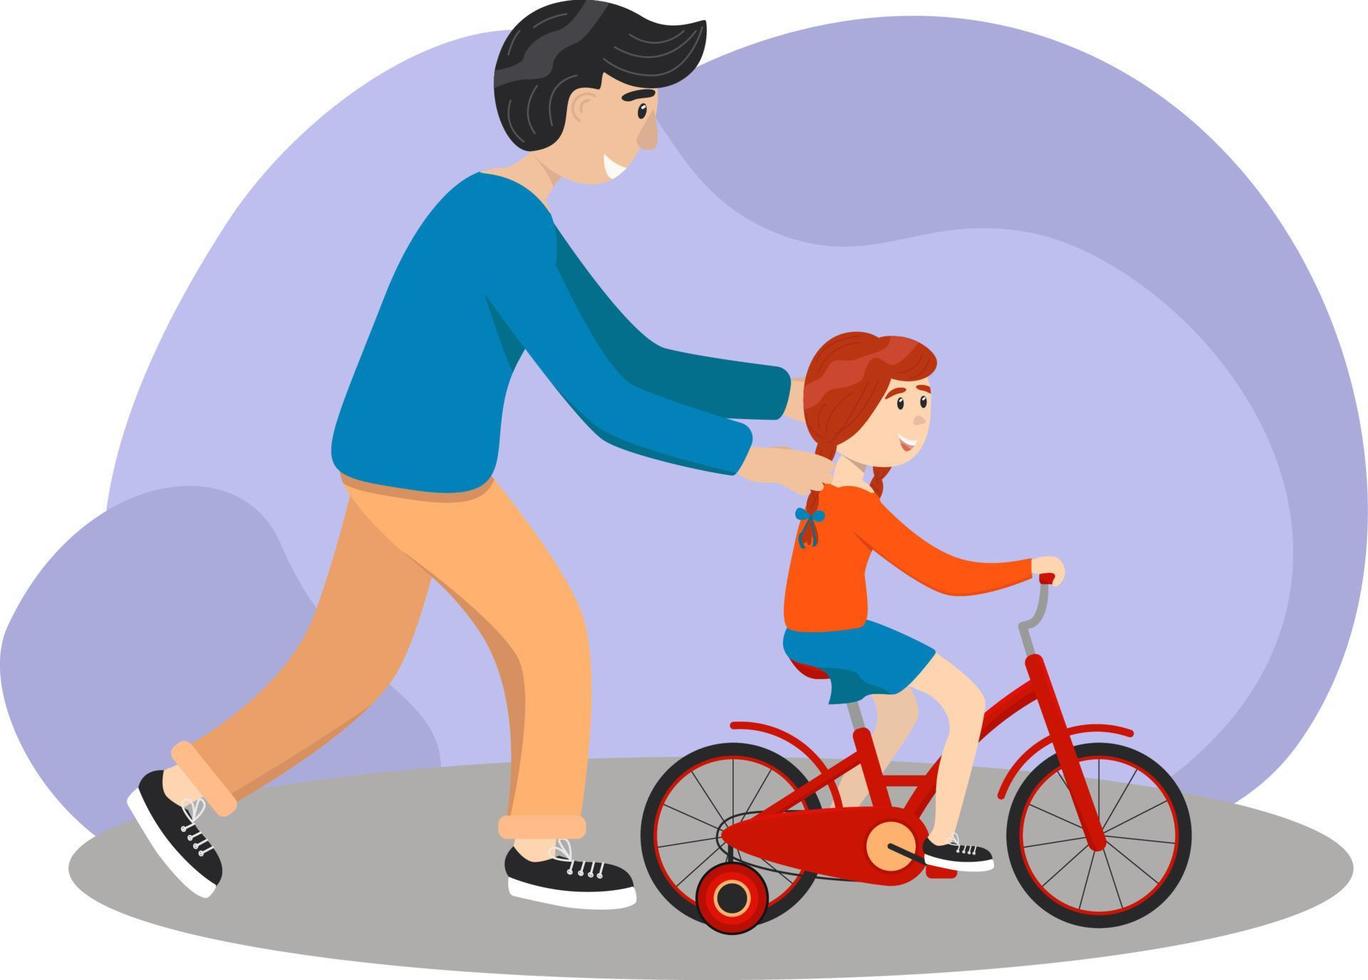 padre enseña a su hija a andar en bicicleta. el niño aprende a andar en bicicleta. concepto de crianza. el padre ayuda a su niña a aprender a andar en bicicleta en el campo juntos. ilustración vectorial de stock, eps 10. vector